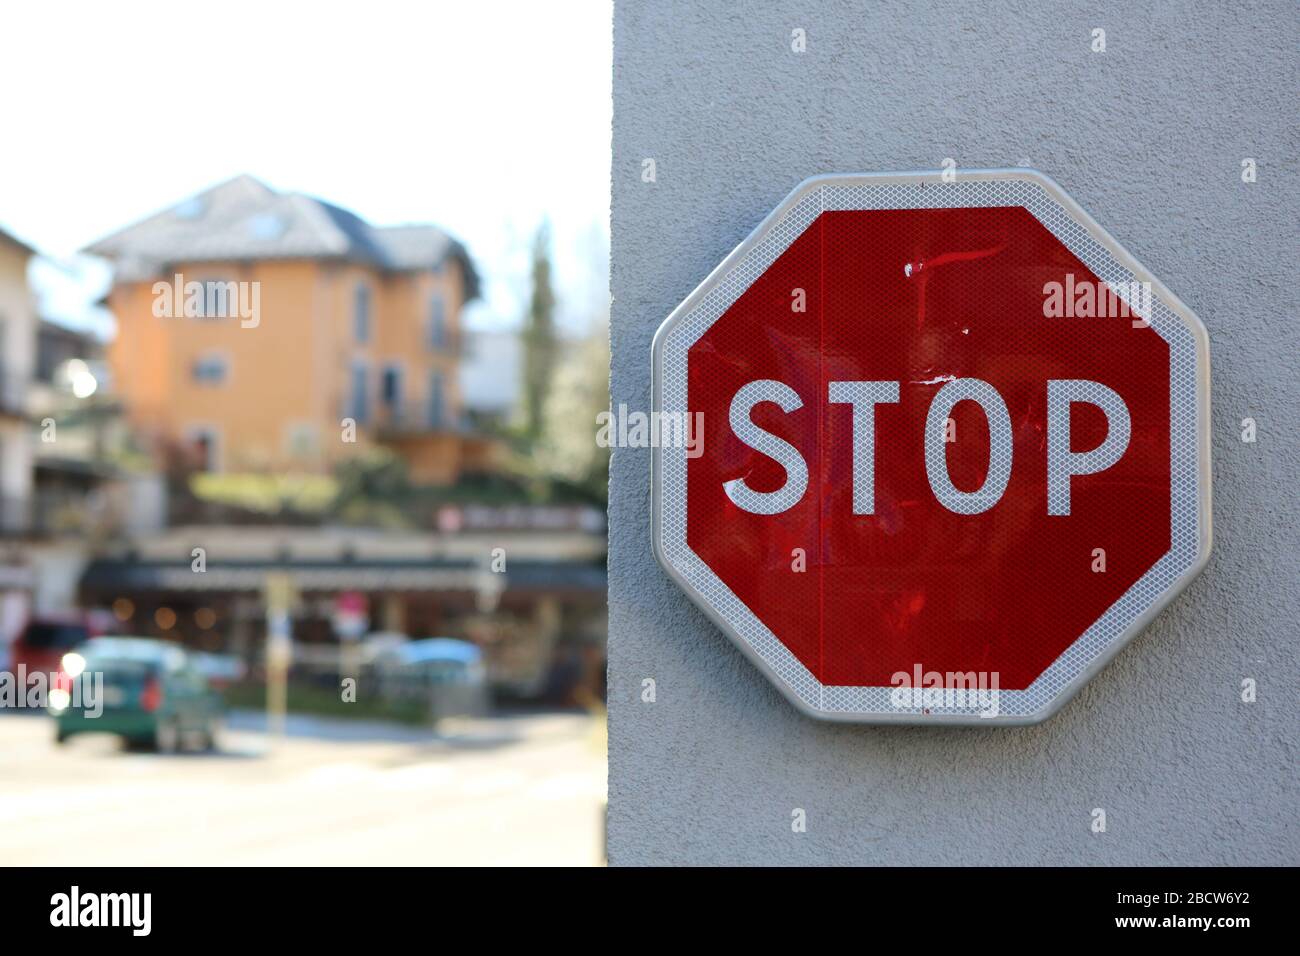 Signalisation routière : Stop. Saint-Gervais-les-Bains. Haute-Savoie. France. Stock Photo